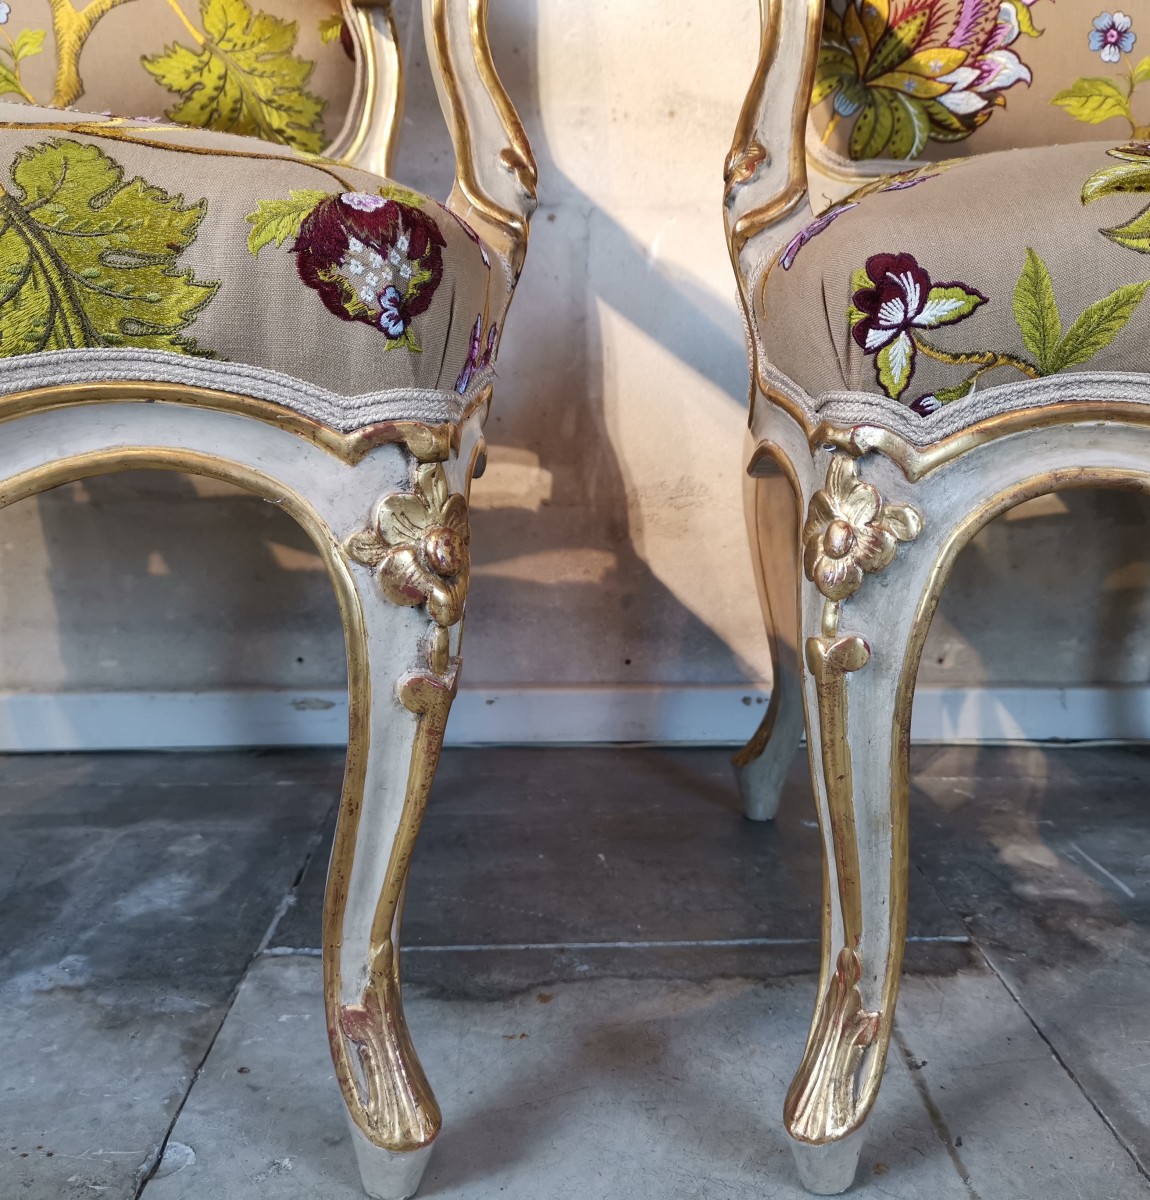 A pair of Louis XVI giltwood armchairs, stamped by Jean-Baptiste Gourdin, Paire de fauteuils en bois doré d'époque Louis XVI, estampille de  Jean-Baptiste Gourdin